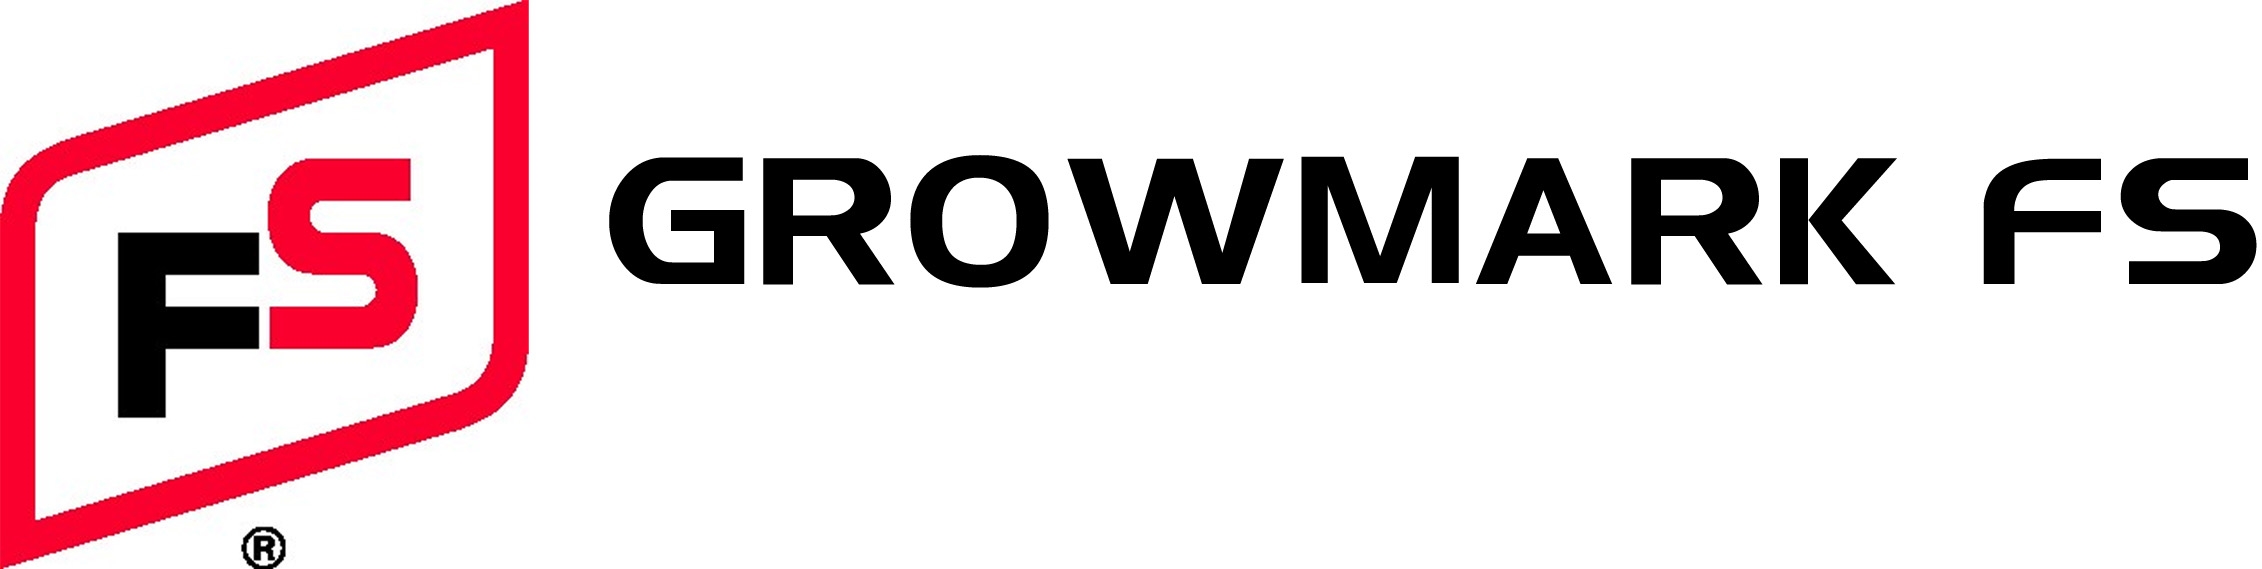 GROWMARK FS, LLC Company Logo